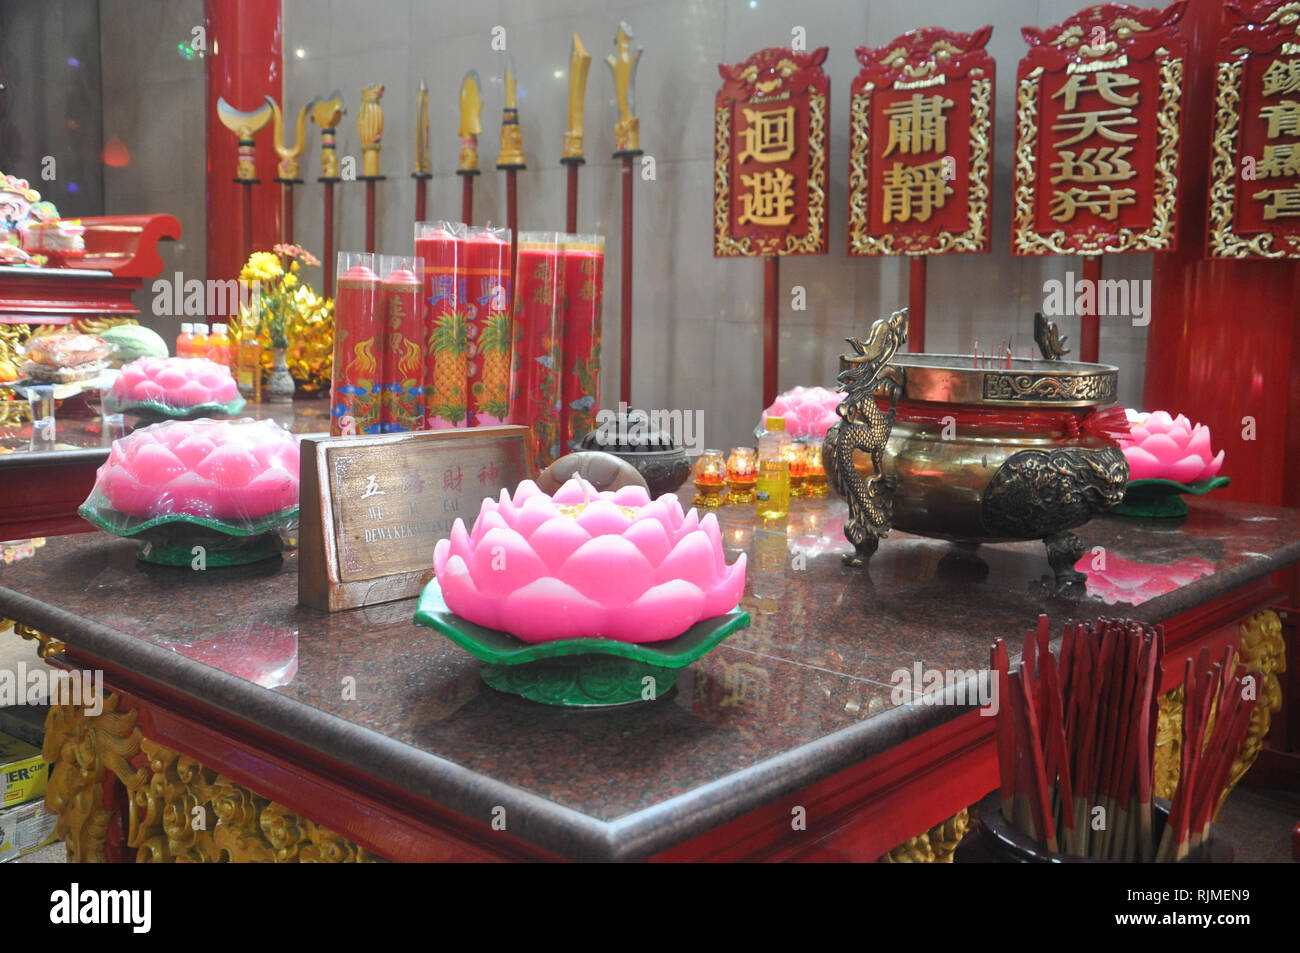 Situation dans Xian Ma Temple qui a été décoré pour le Nouvel An lunaire. Descendants chinois indonésien se préparent pour les fêtes de la Nouvelle Lune Banque D'Images